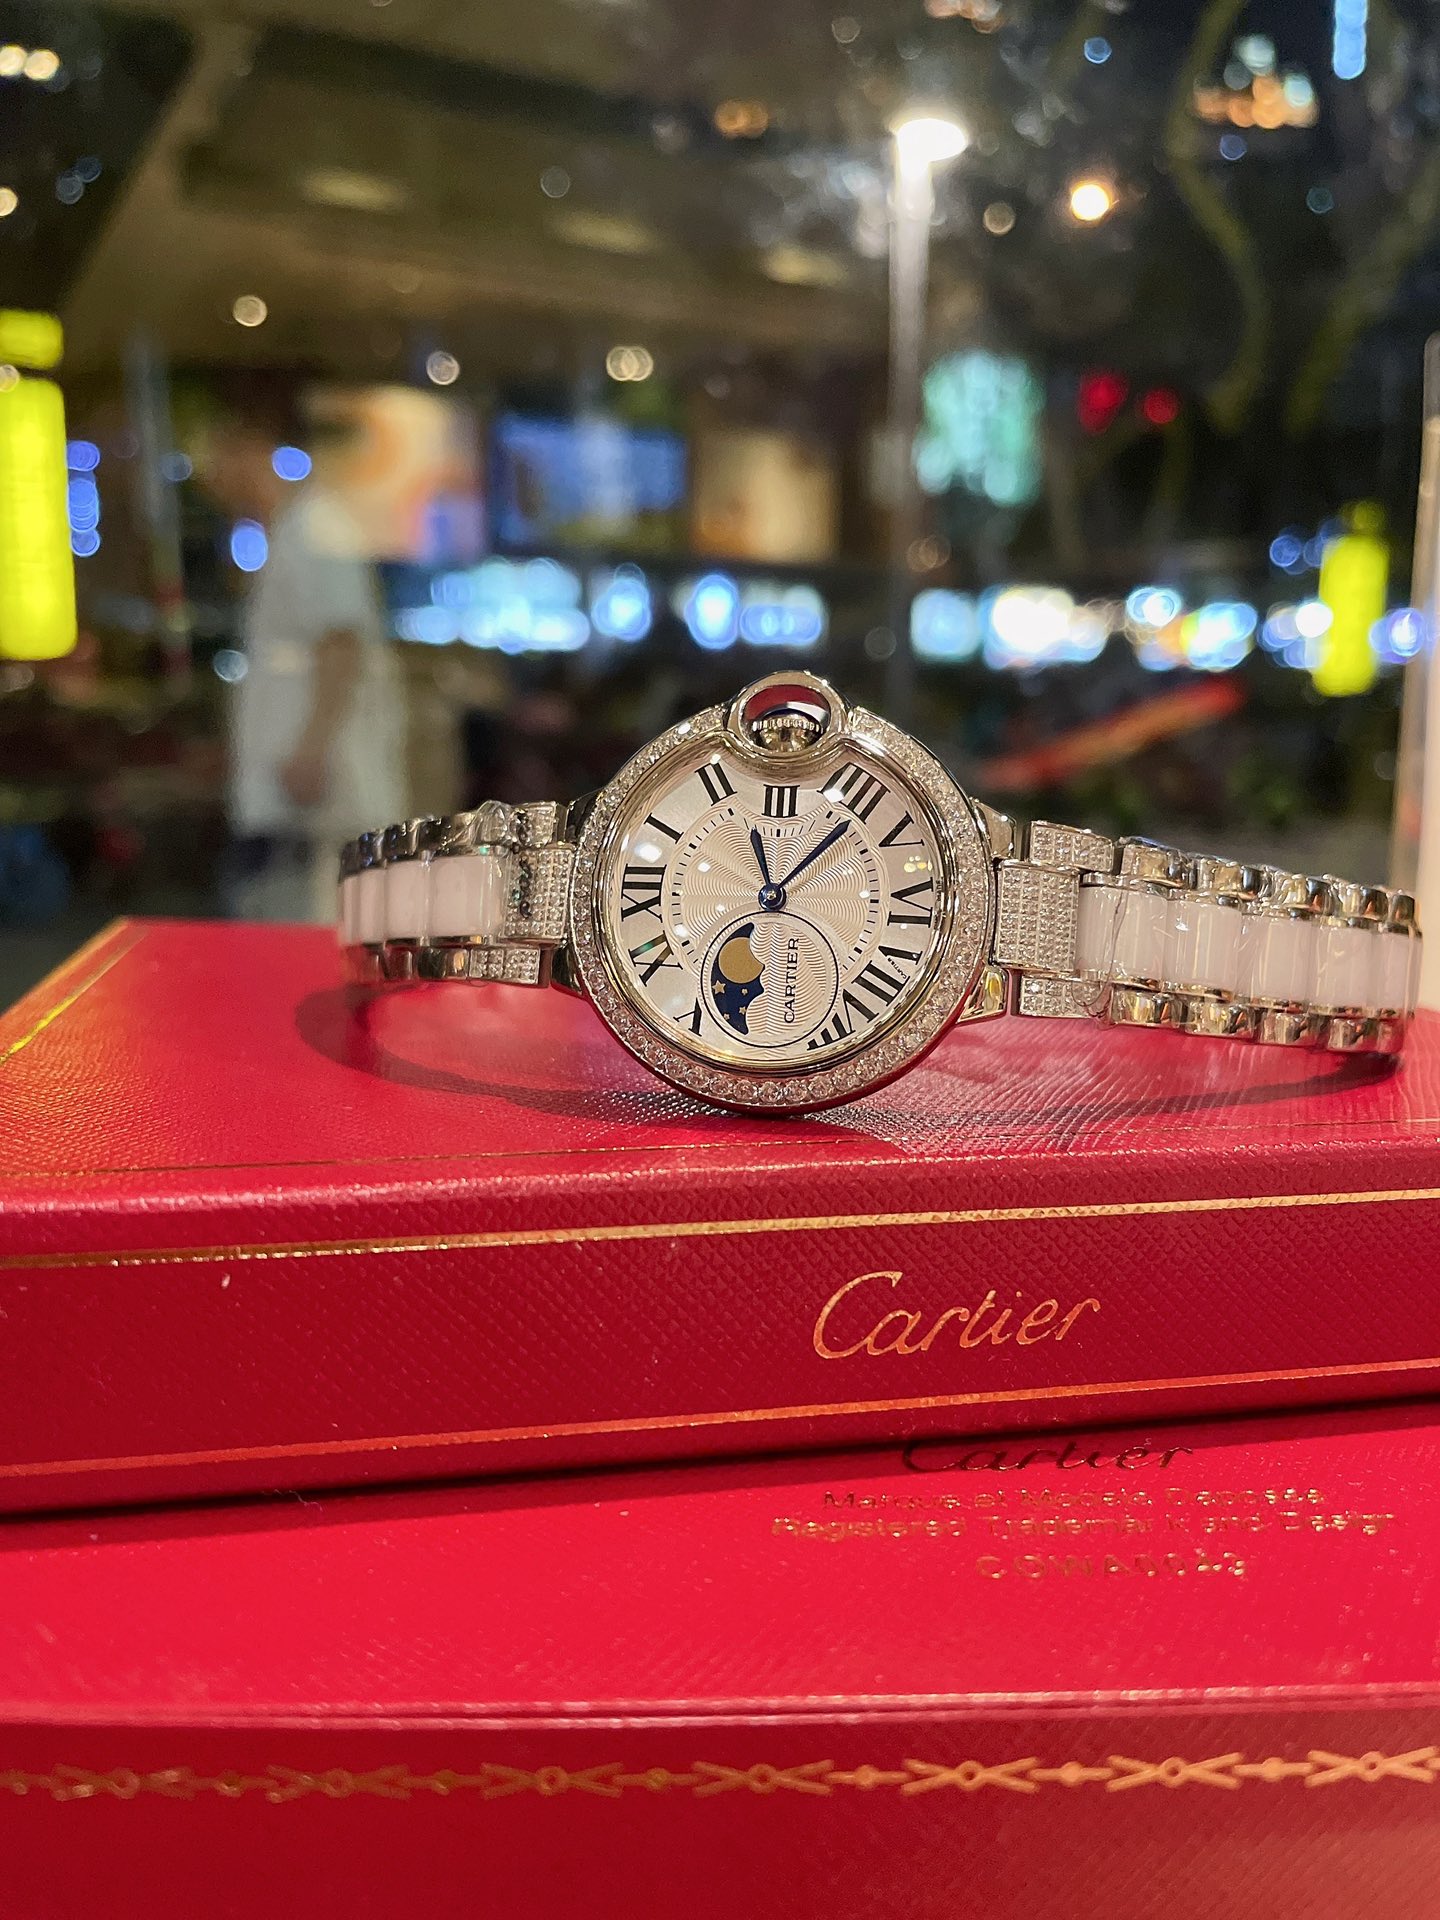 CARTIERカルティエ 真贋 時計スーパーコピー フランス 薄い腕時計 スチールバンド レザー 新品 ホワイト_5